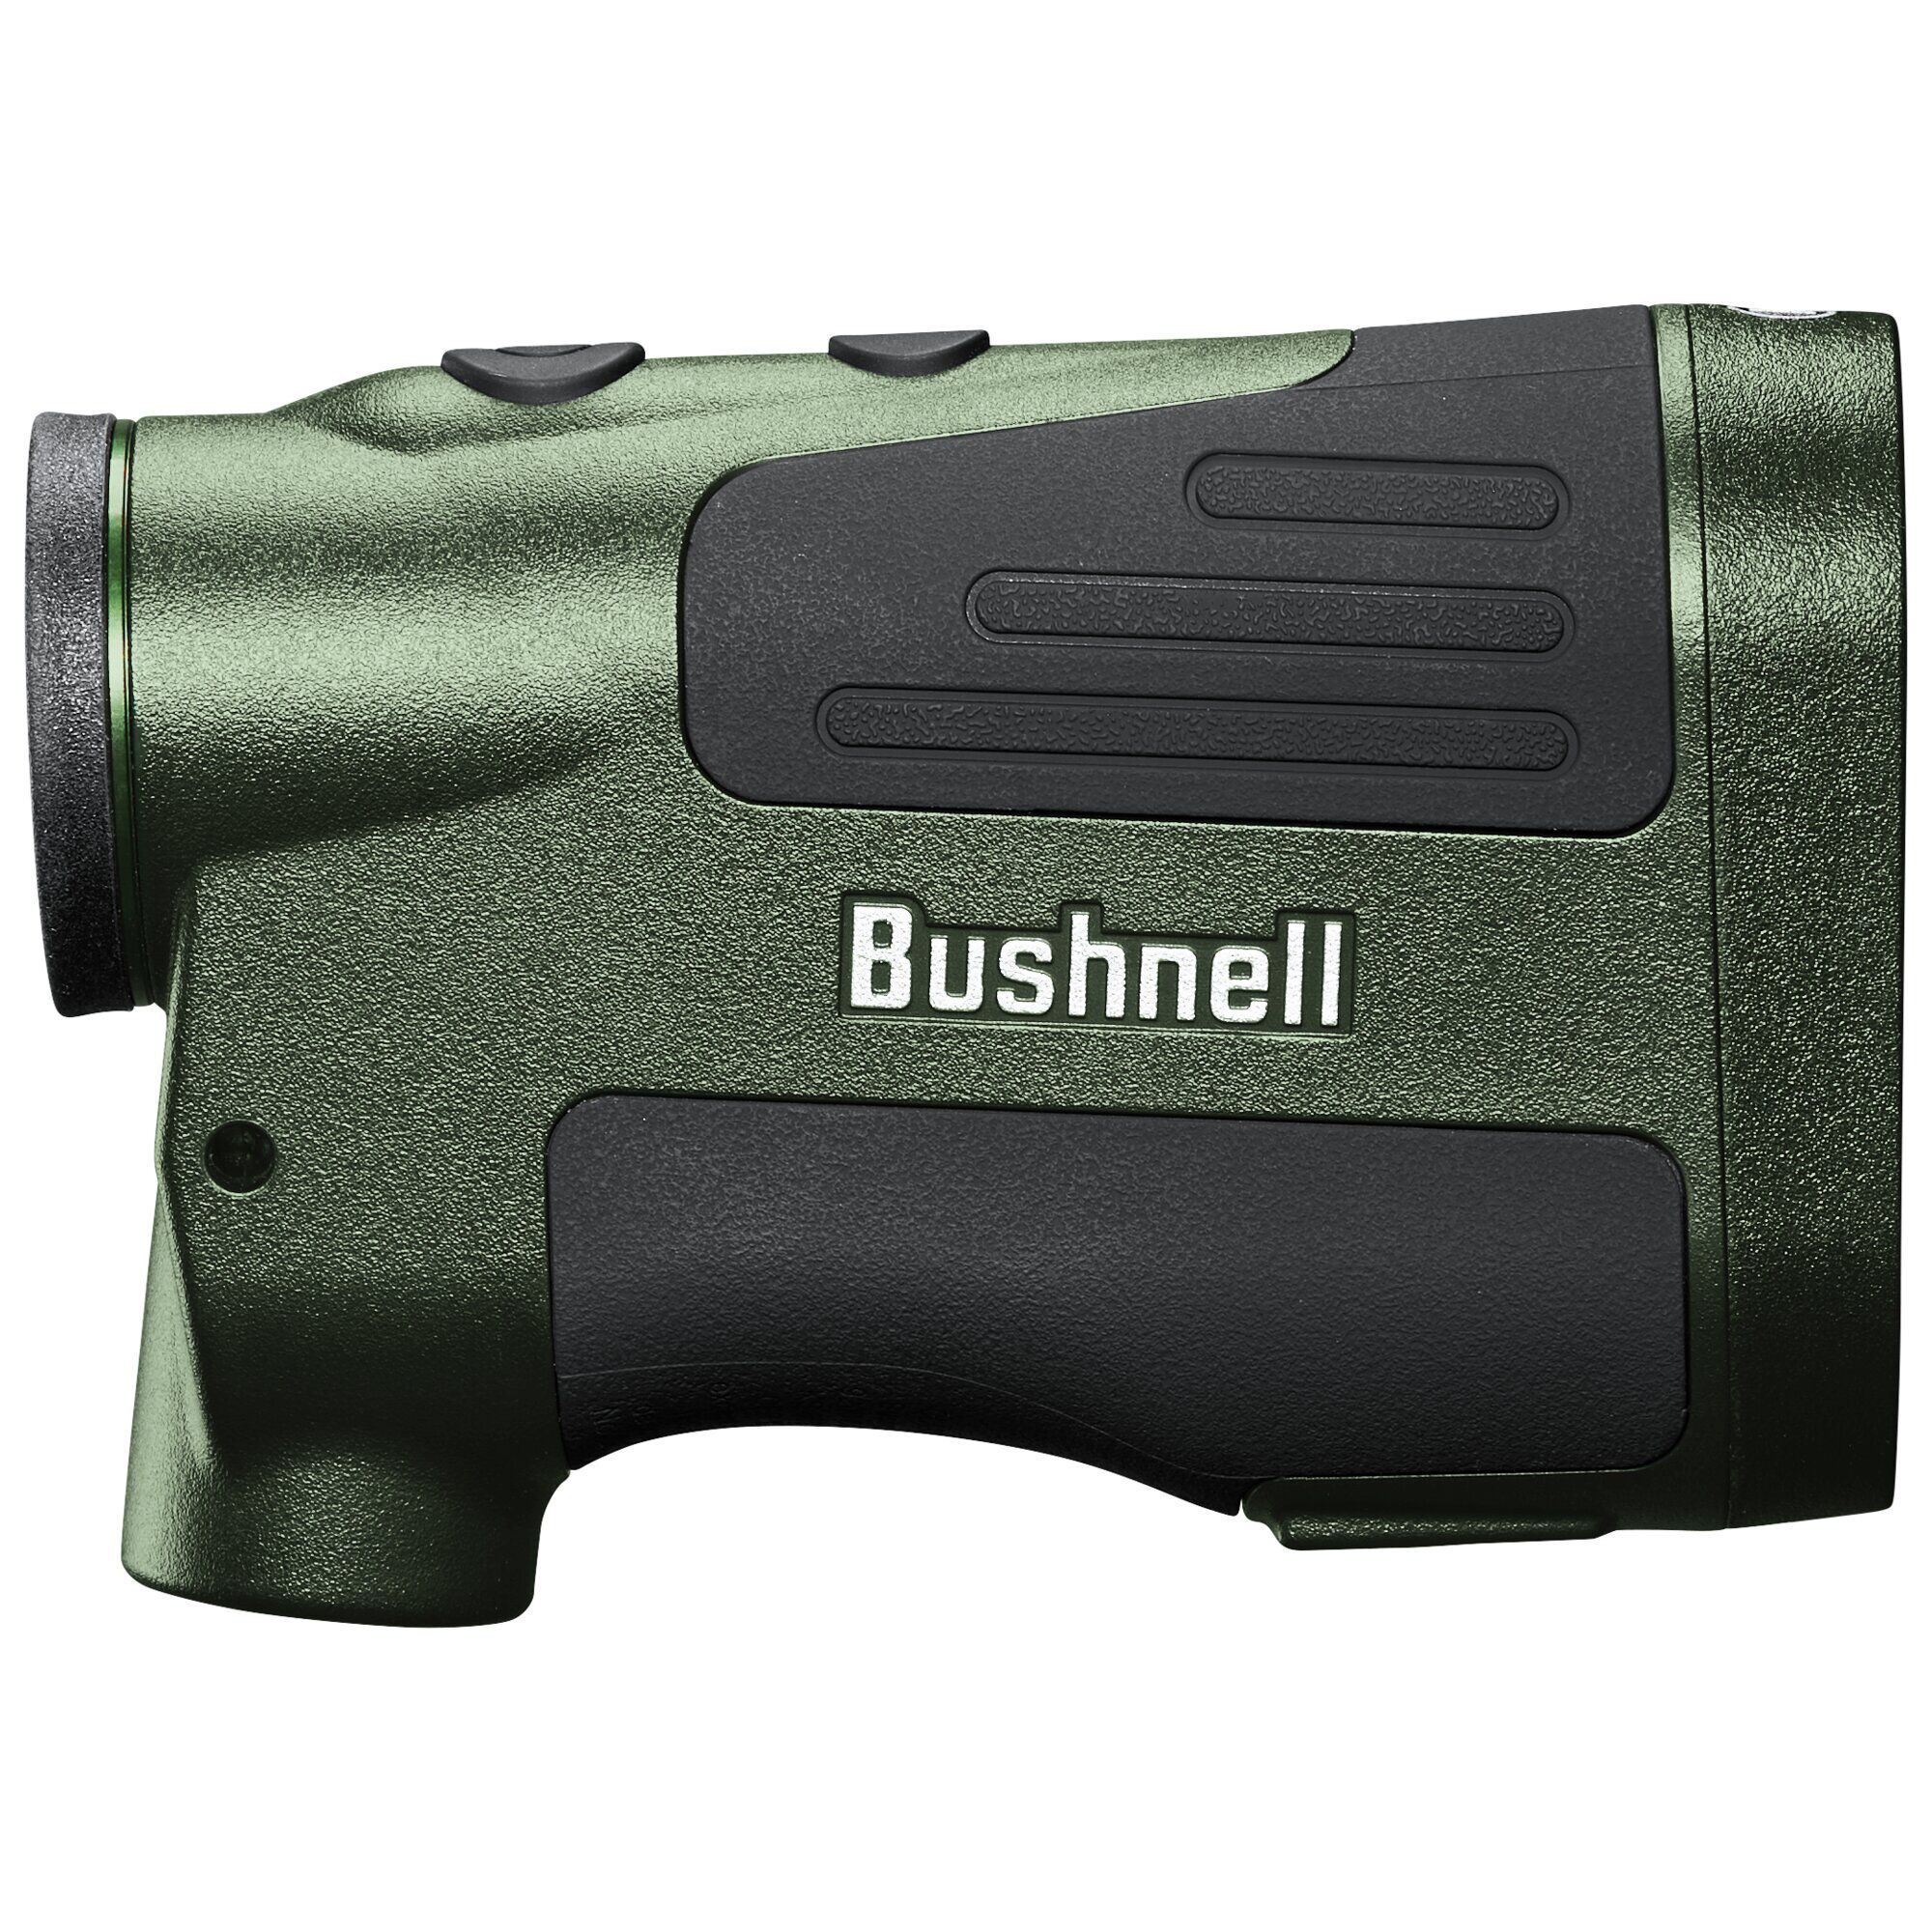 Prime Brand Rangefinders | Bushnell